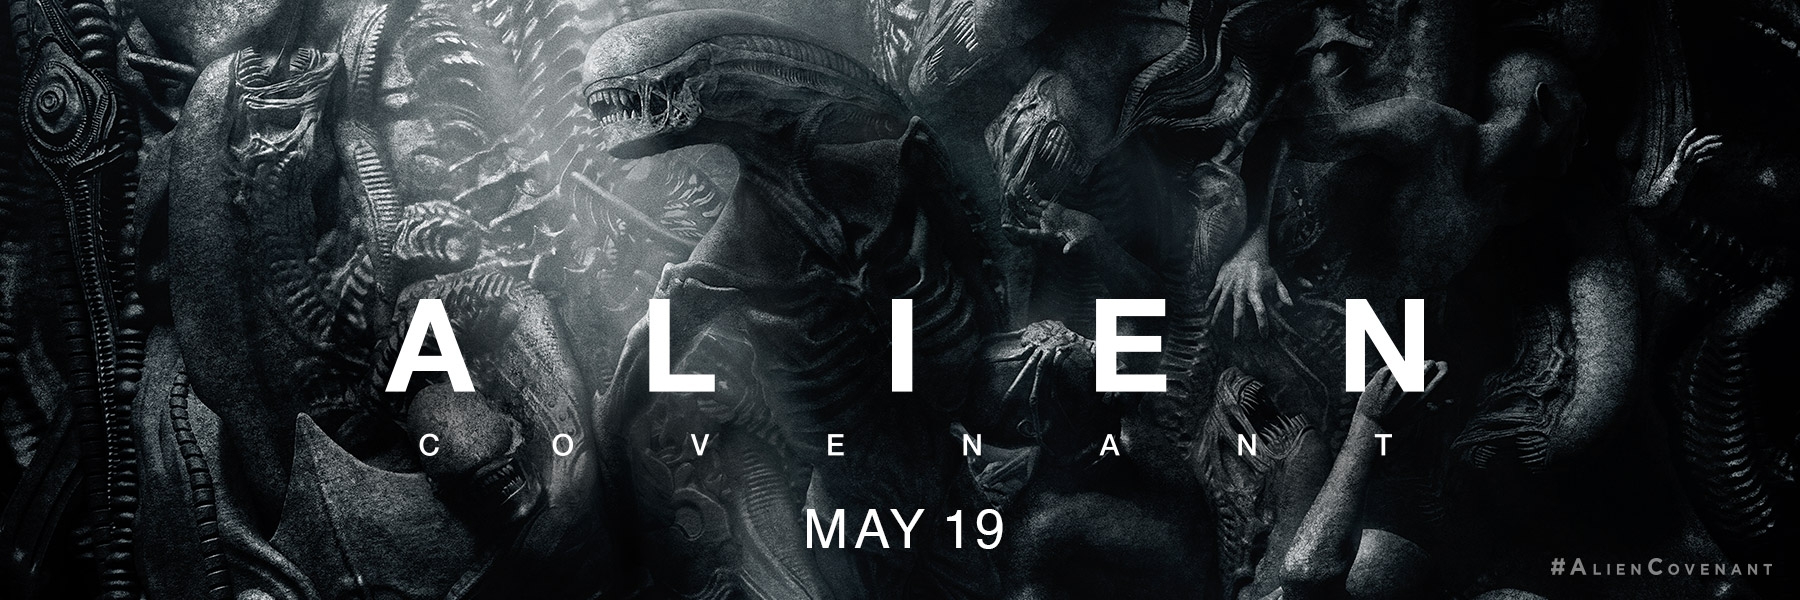 Alien: Covenant Backgrounds, Compatible - PC, Mobile, Gadgets| 1800x600 px